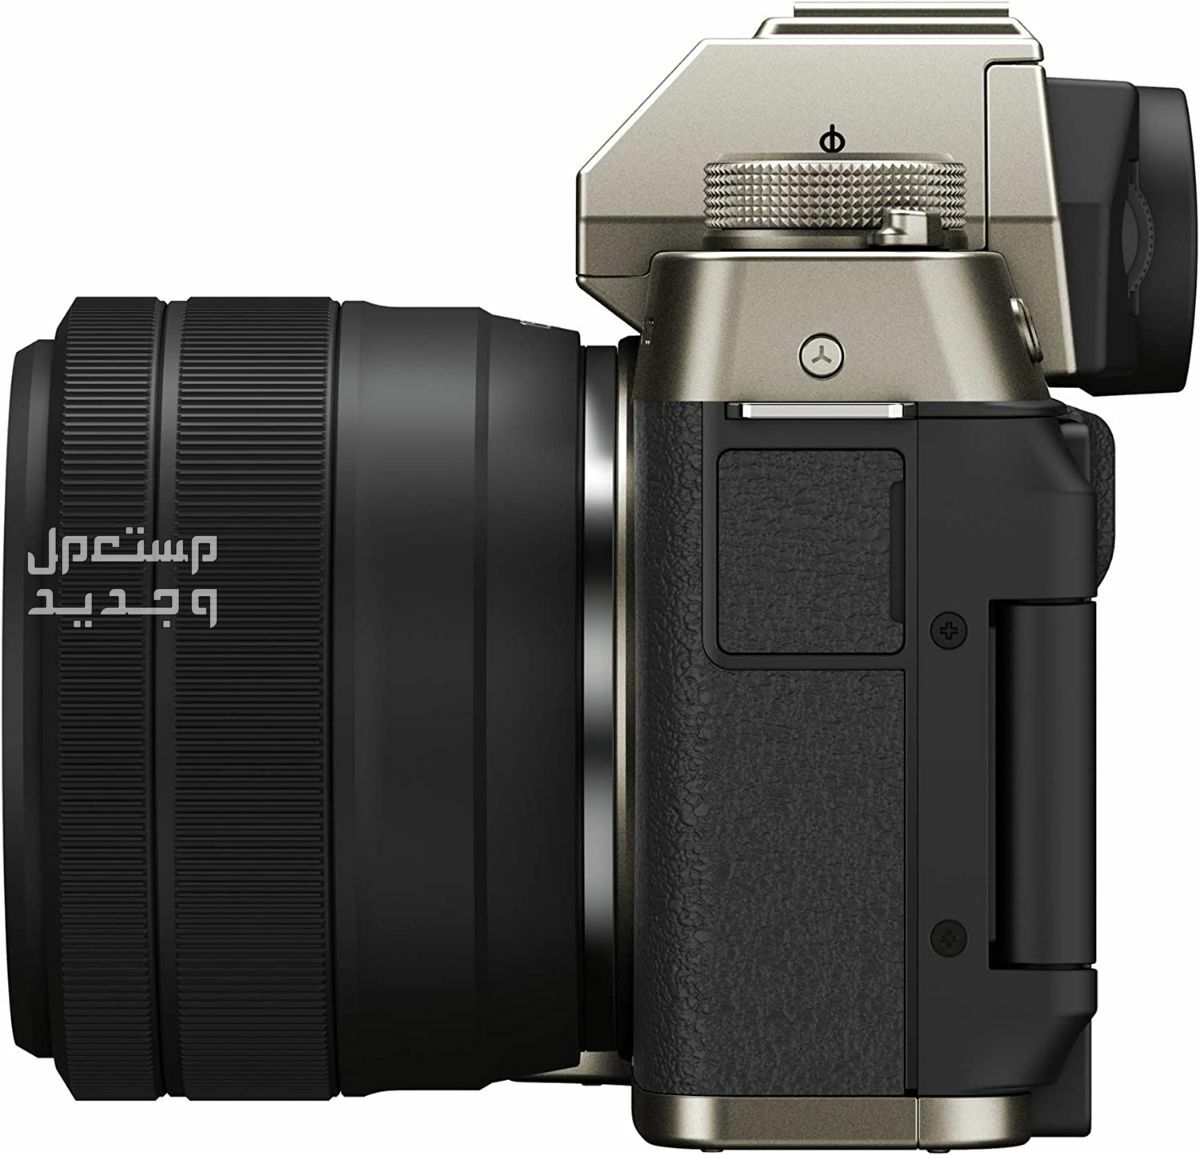 10 كاميرات تصوير ماركات عالمية بأسعار رخيصة في اليَمَن سعر كاميرا Fujifilm X-T200